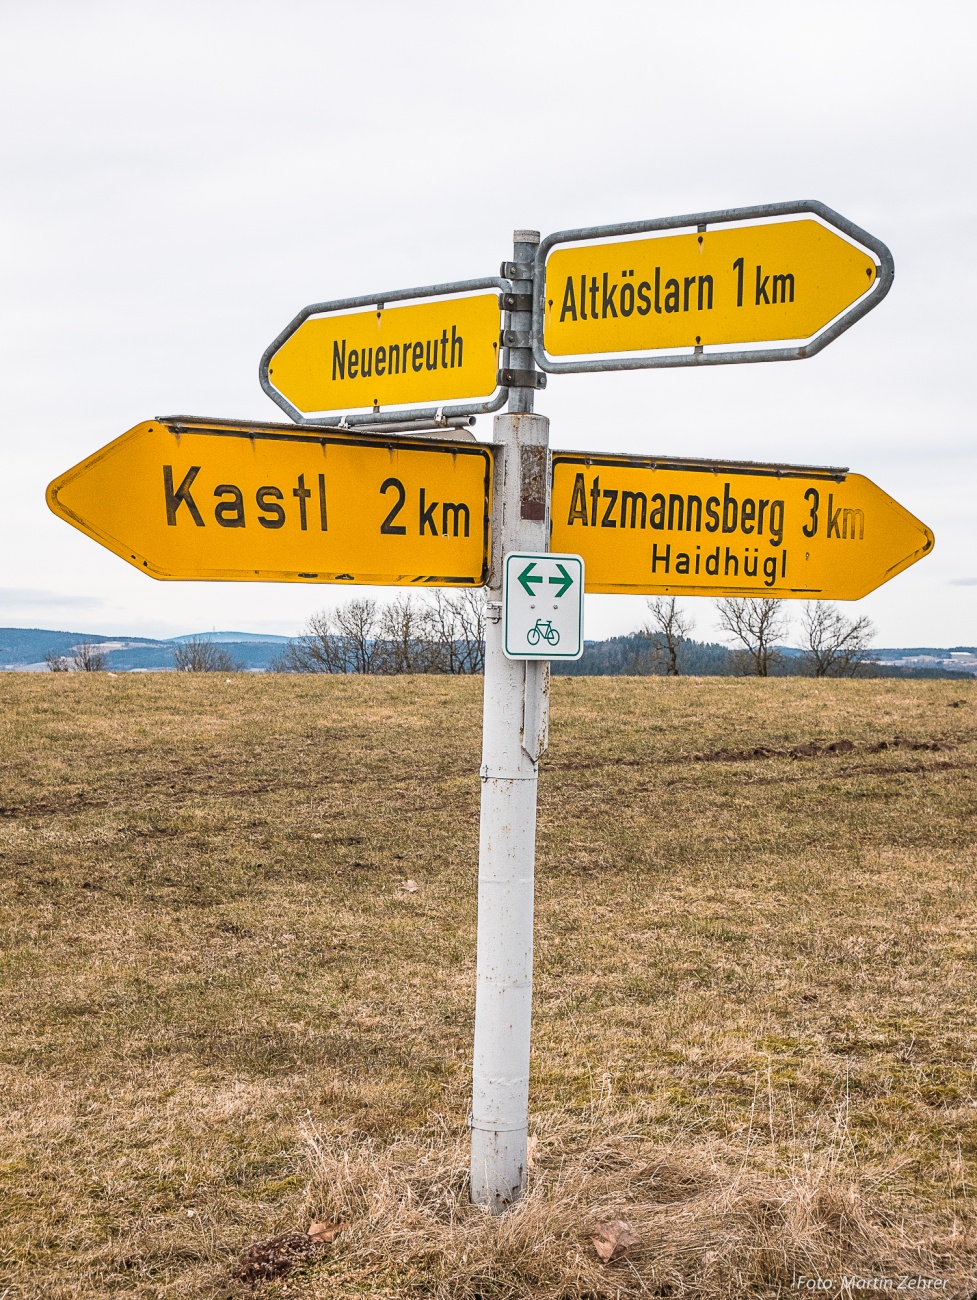 Foto: Martin Zehrer - Freie Auswahl, ein Wegweiser bei Neuenruth, wenn man von Atzmannsberg her durch den Wald fährt. Ich wählte den Weg Richtung Altköslarn...<br />
<br />
1. Frühlingsradtour am 11. Mä 